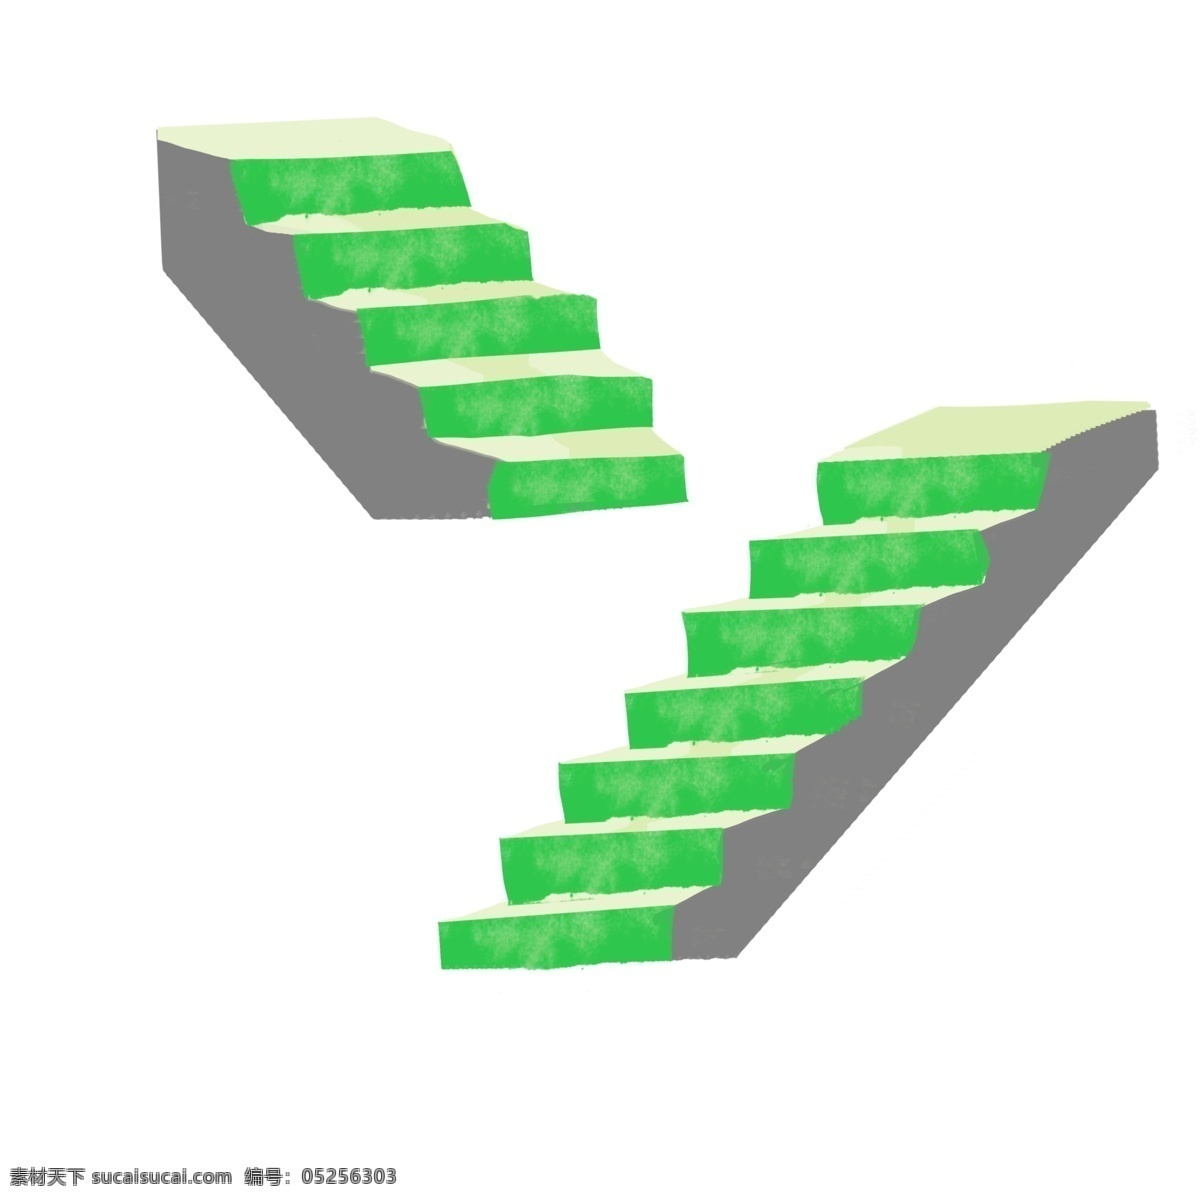 绿色 楼梯 装饰 插画 绿色的楼梯 漂亮的楼梯 立体楼梯 楼梯装饰 楼梯插画 精美楼梯 卡通楼梯